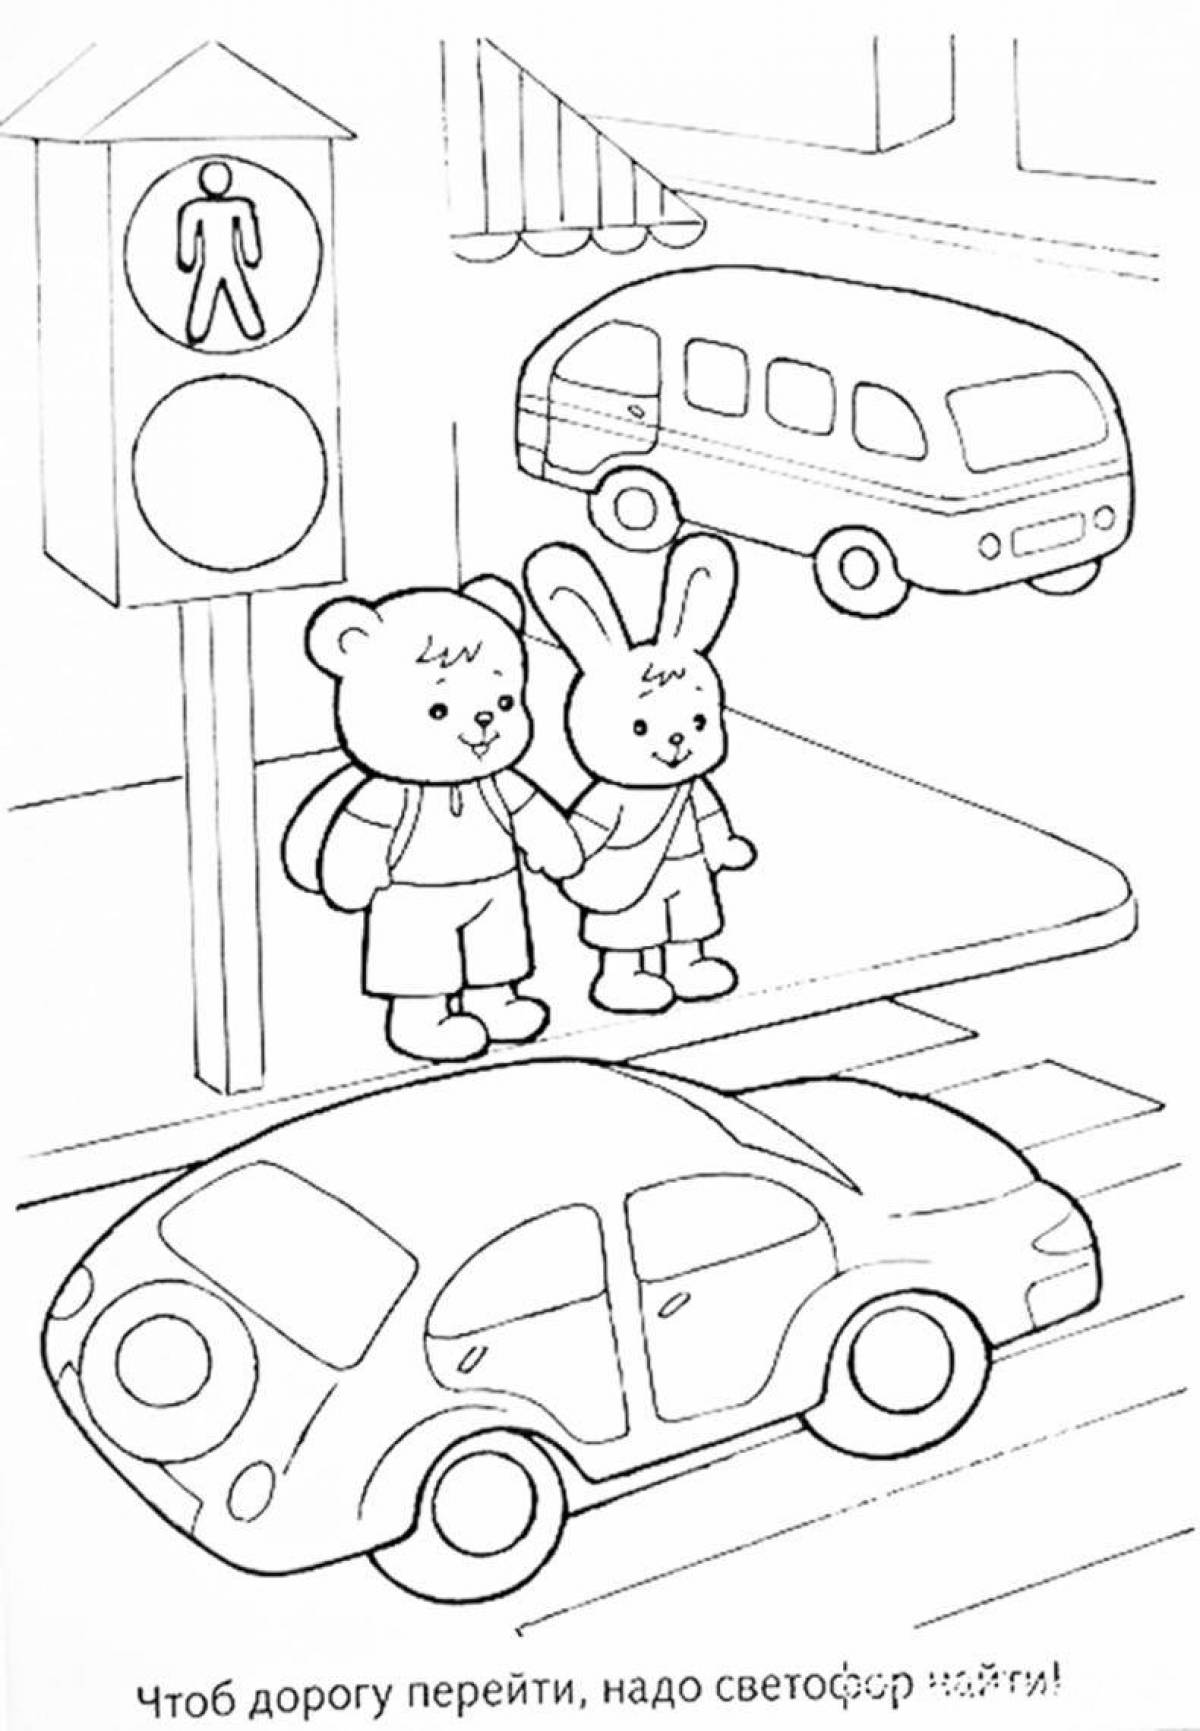 Творческие правила дорожного движения для дошкольников